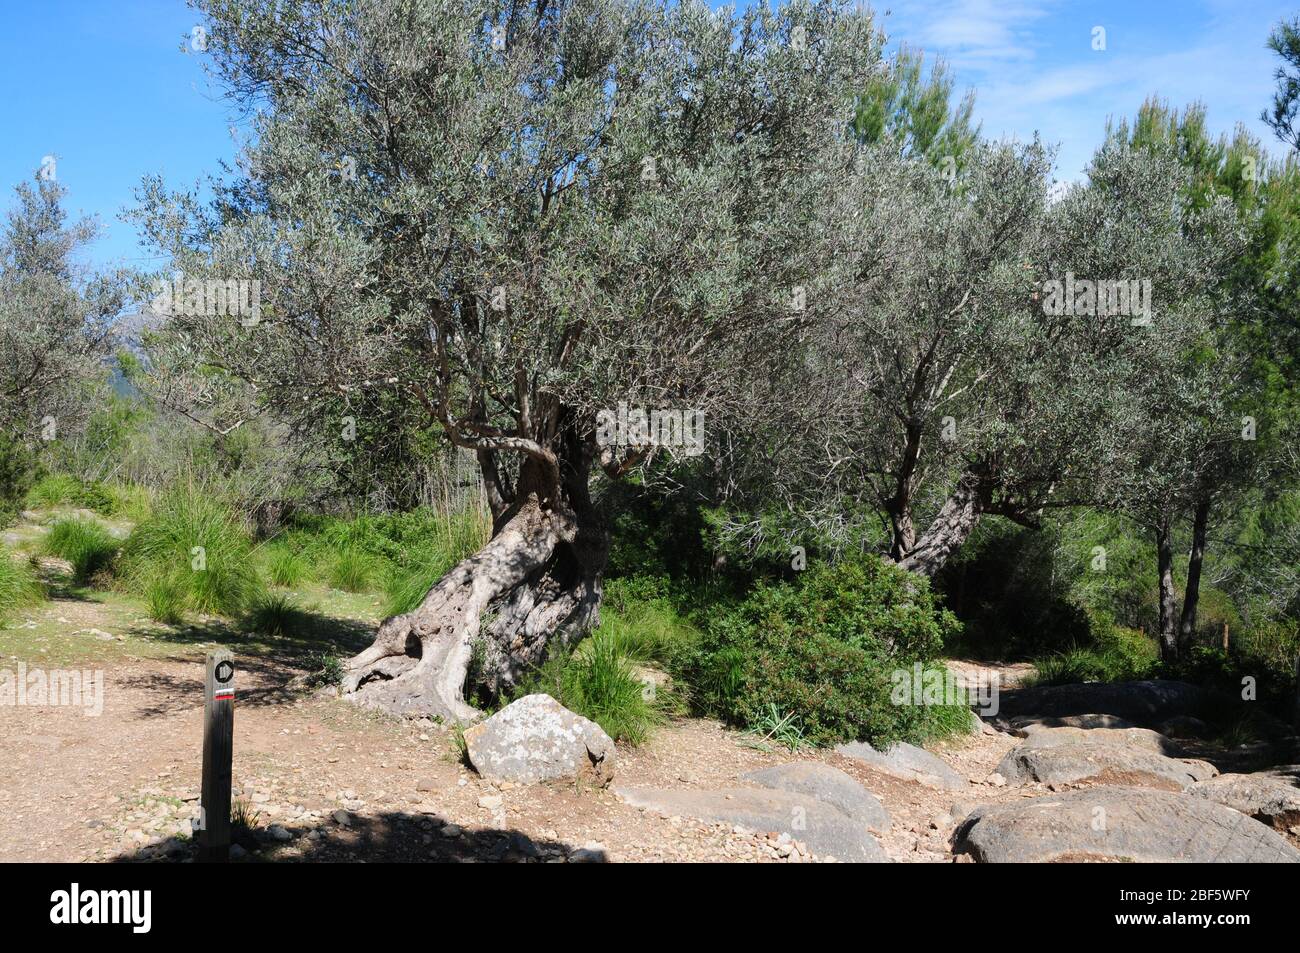 Entlang der gut markierten Wanderroute GR221 auf Mallorca - der Ruta de Pedra en sec oder Dry Stone Way - gibt es viele alte Olivenbäume. Stockfoto